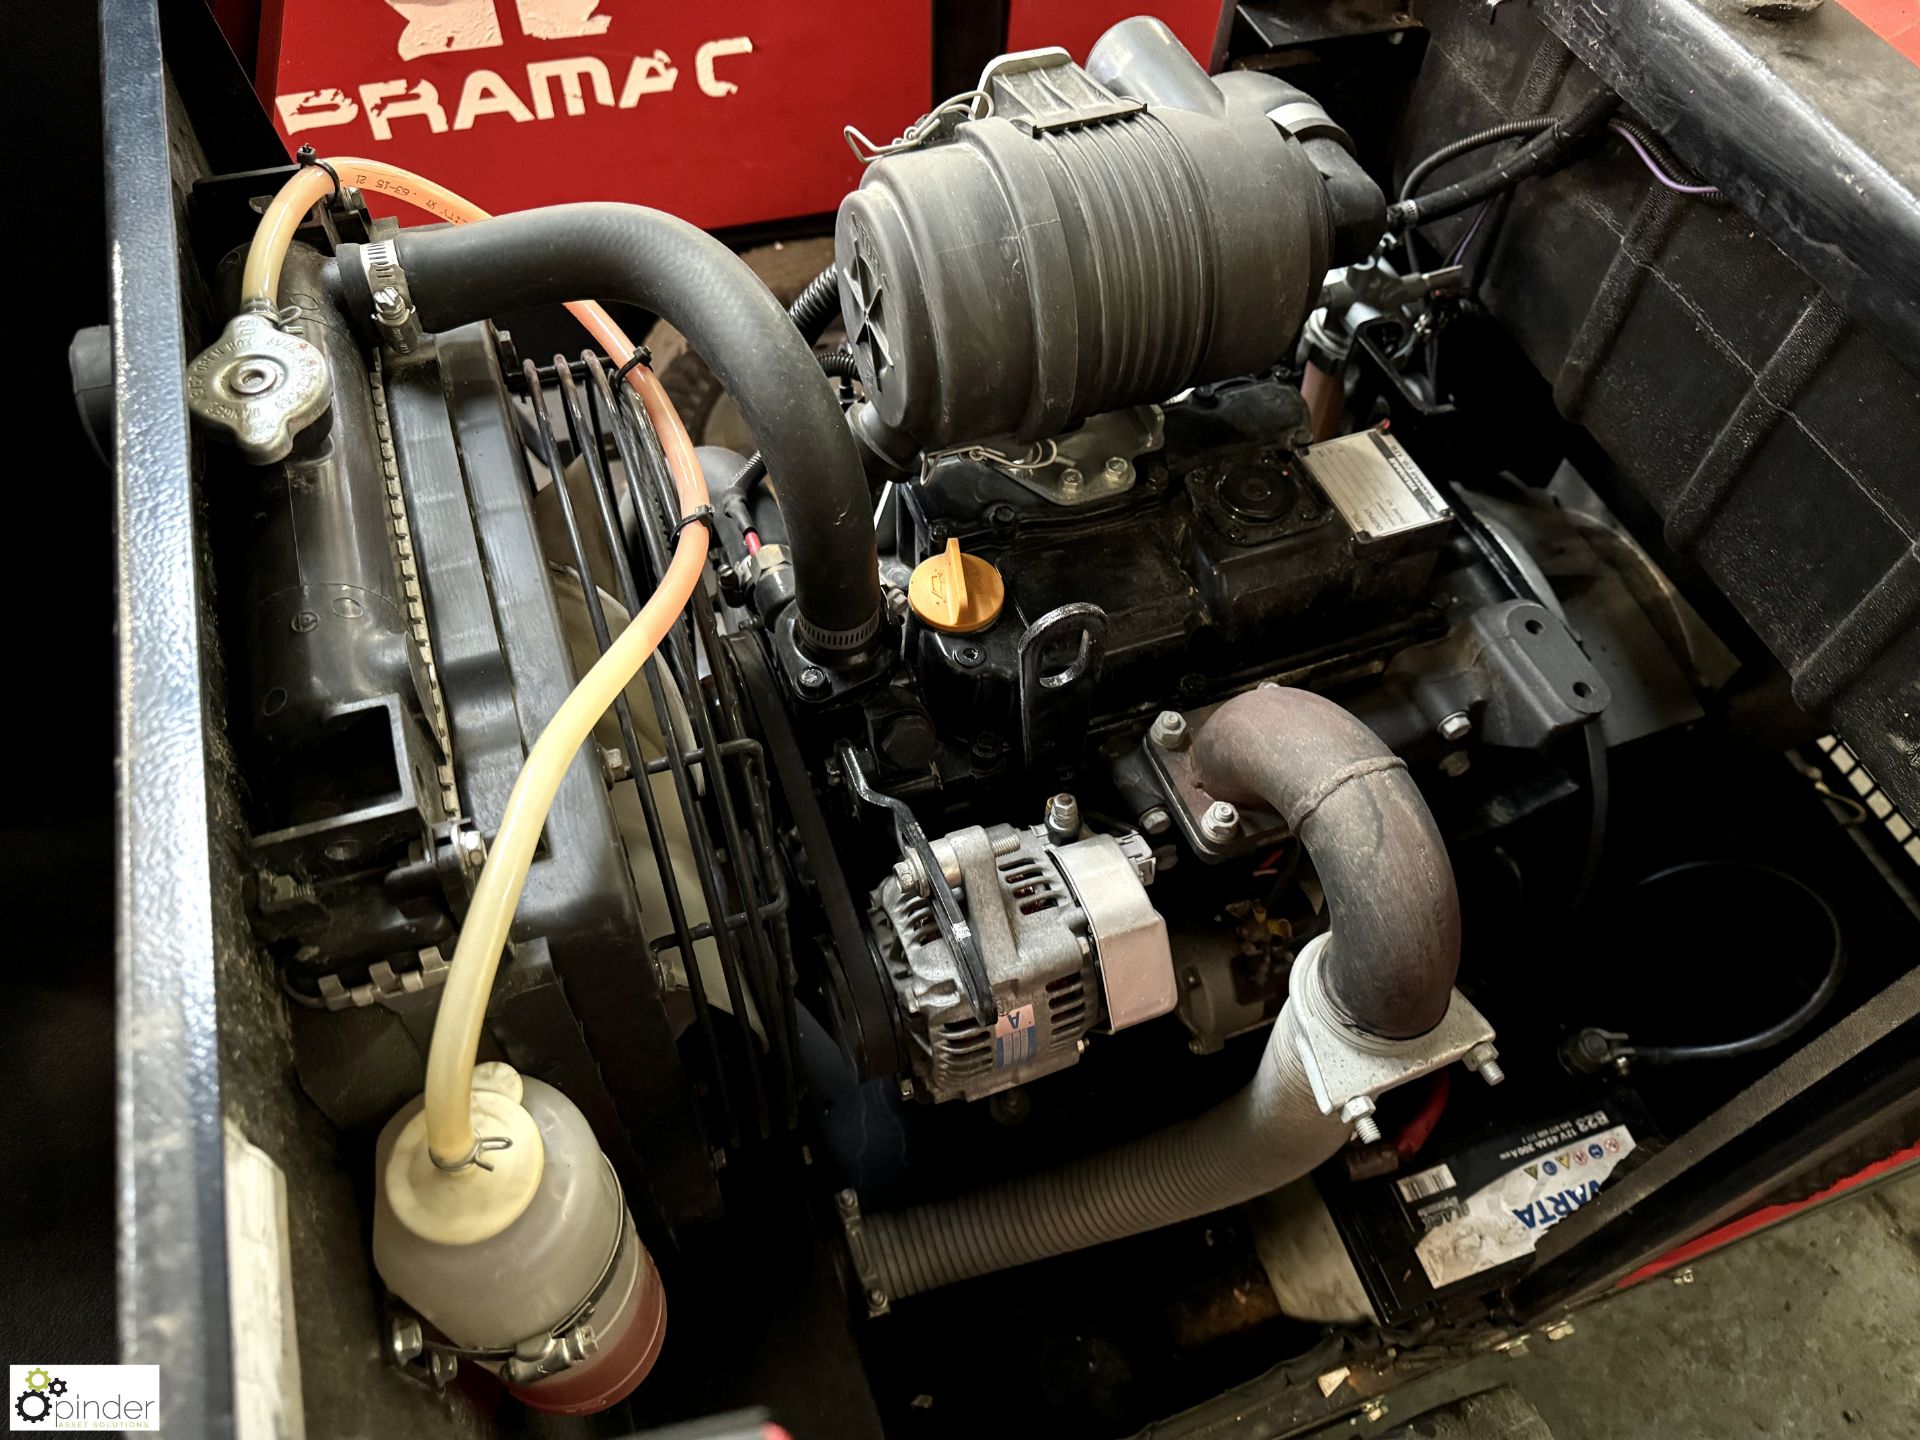 Pramac single axle diesel Generator Set with Meccalte 10kva alternator, Yanmar 16kw diesel engine, 4 - Image 6 of 10